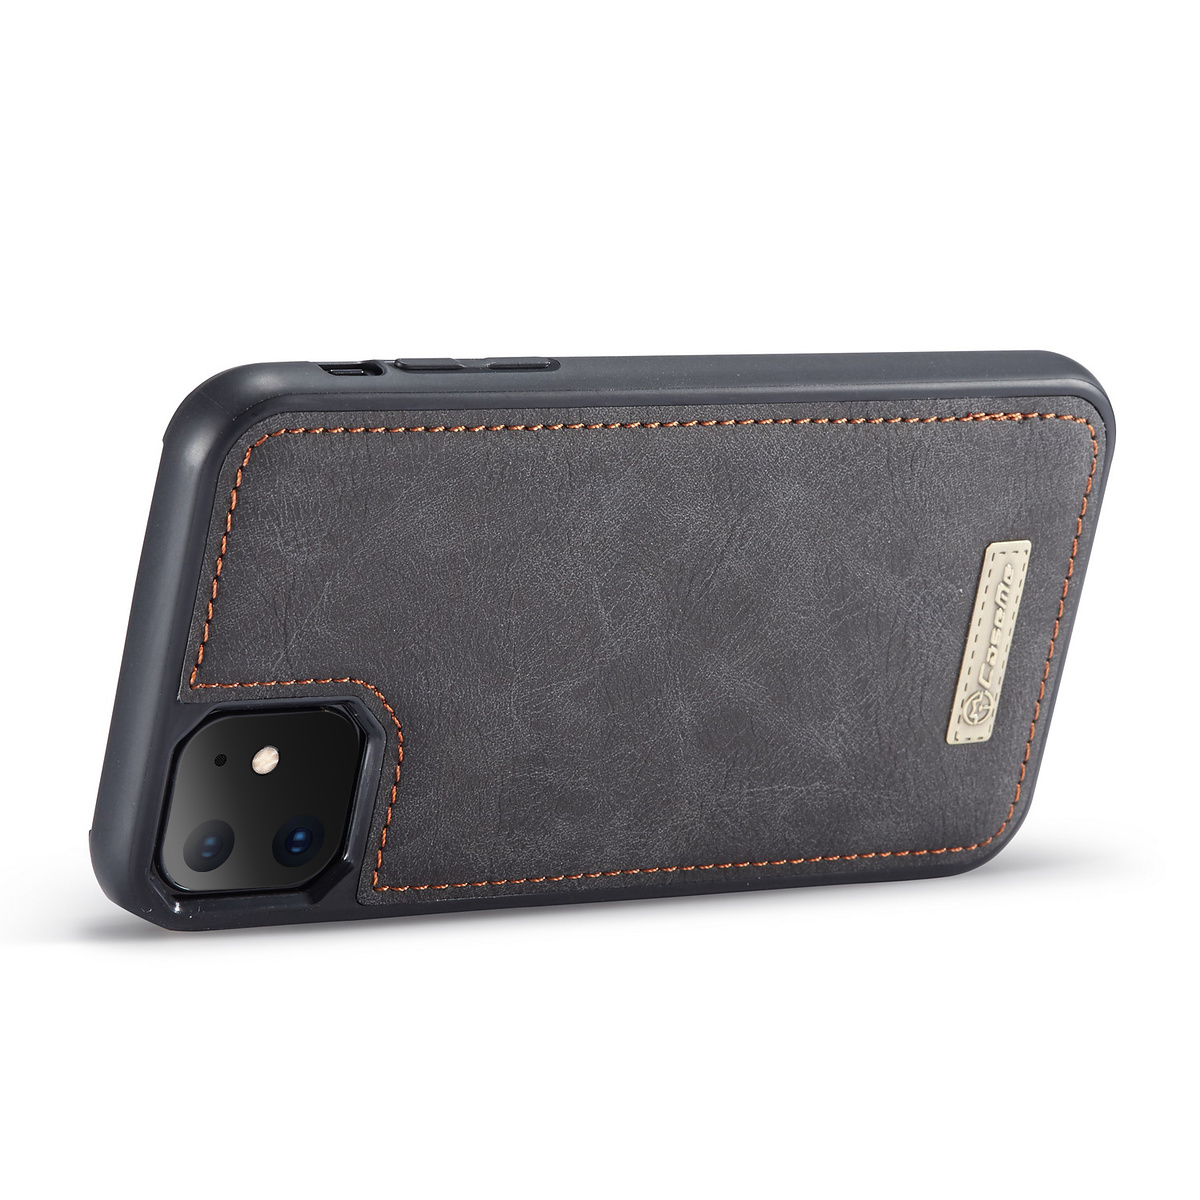 CaseMe plånboksfodral med magnetskal till iPhone 11, svart